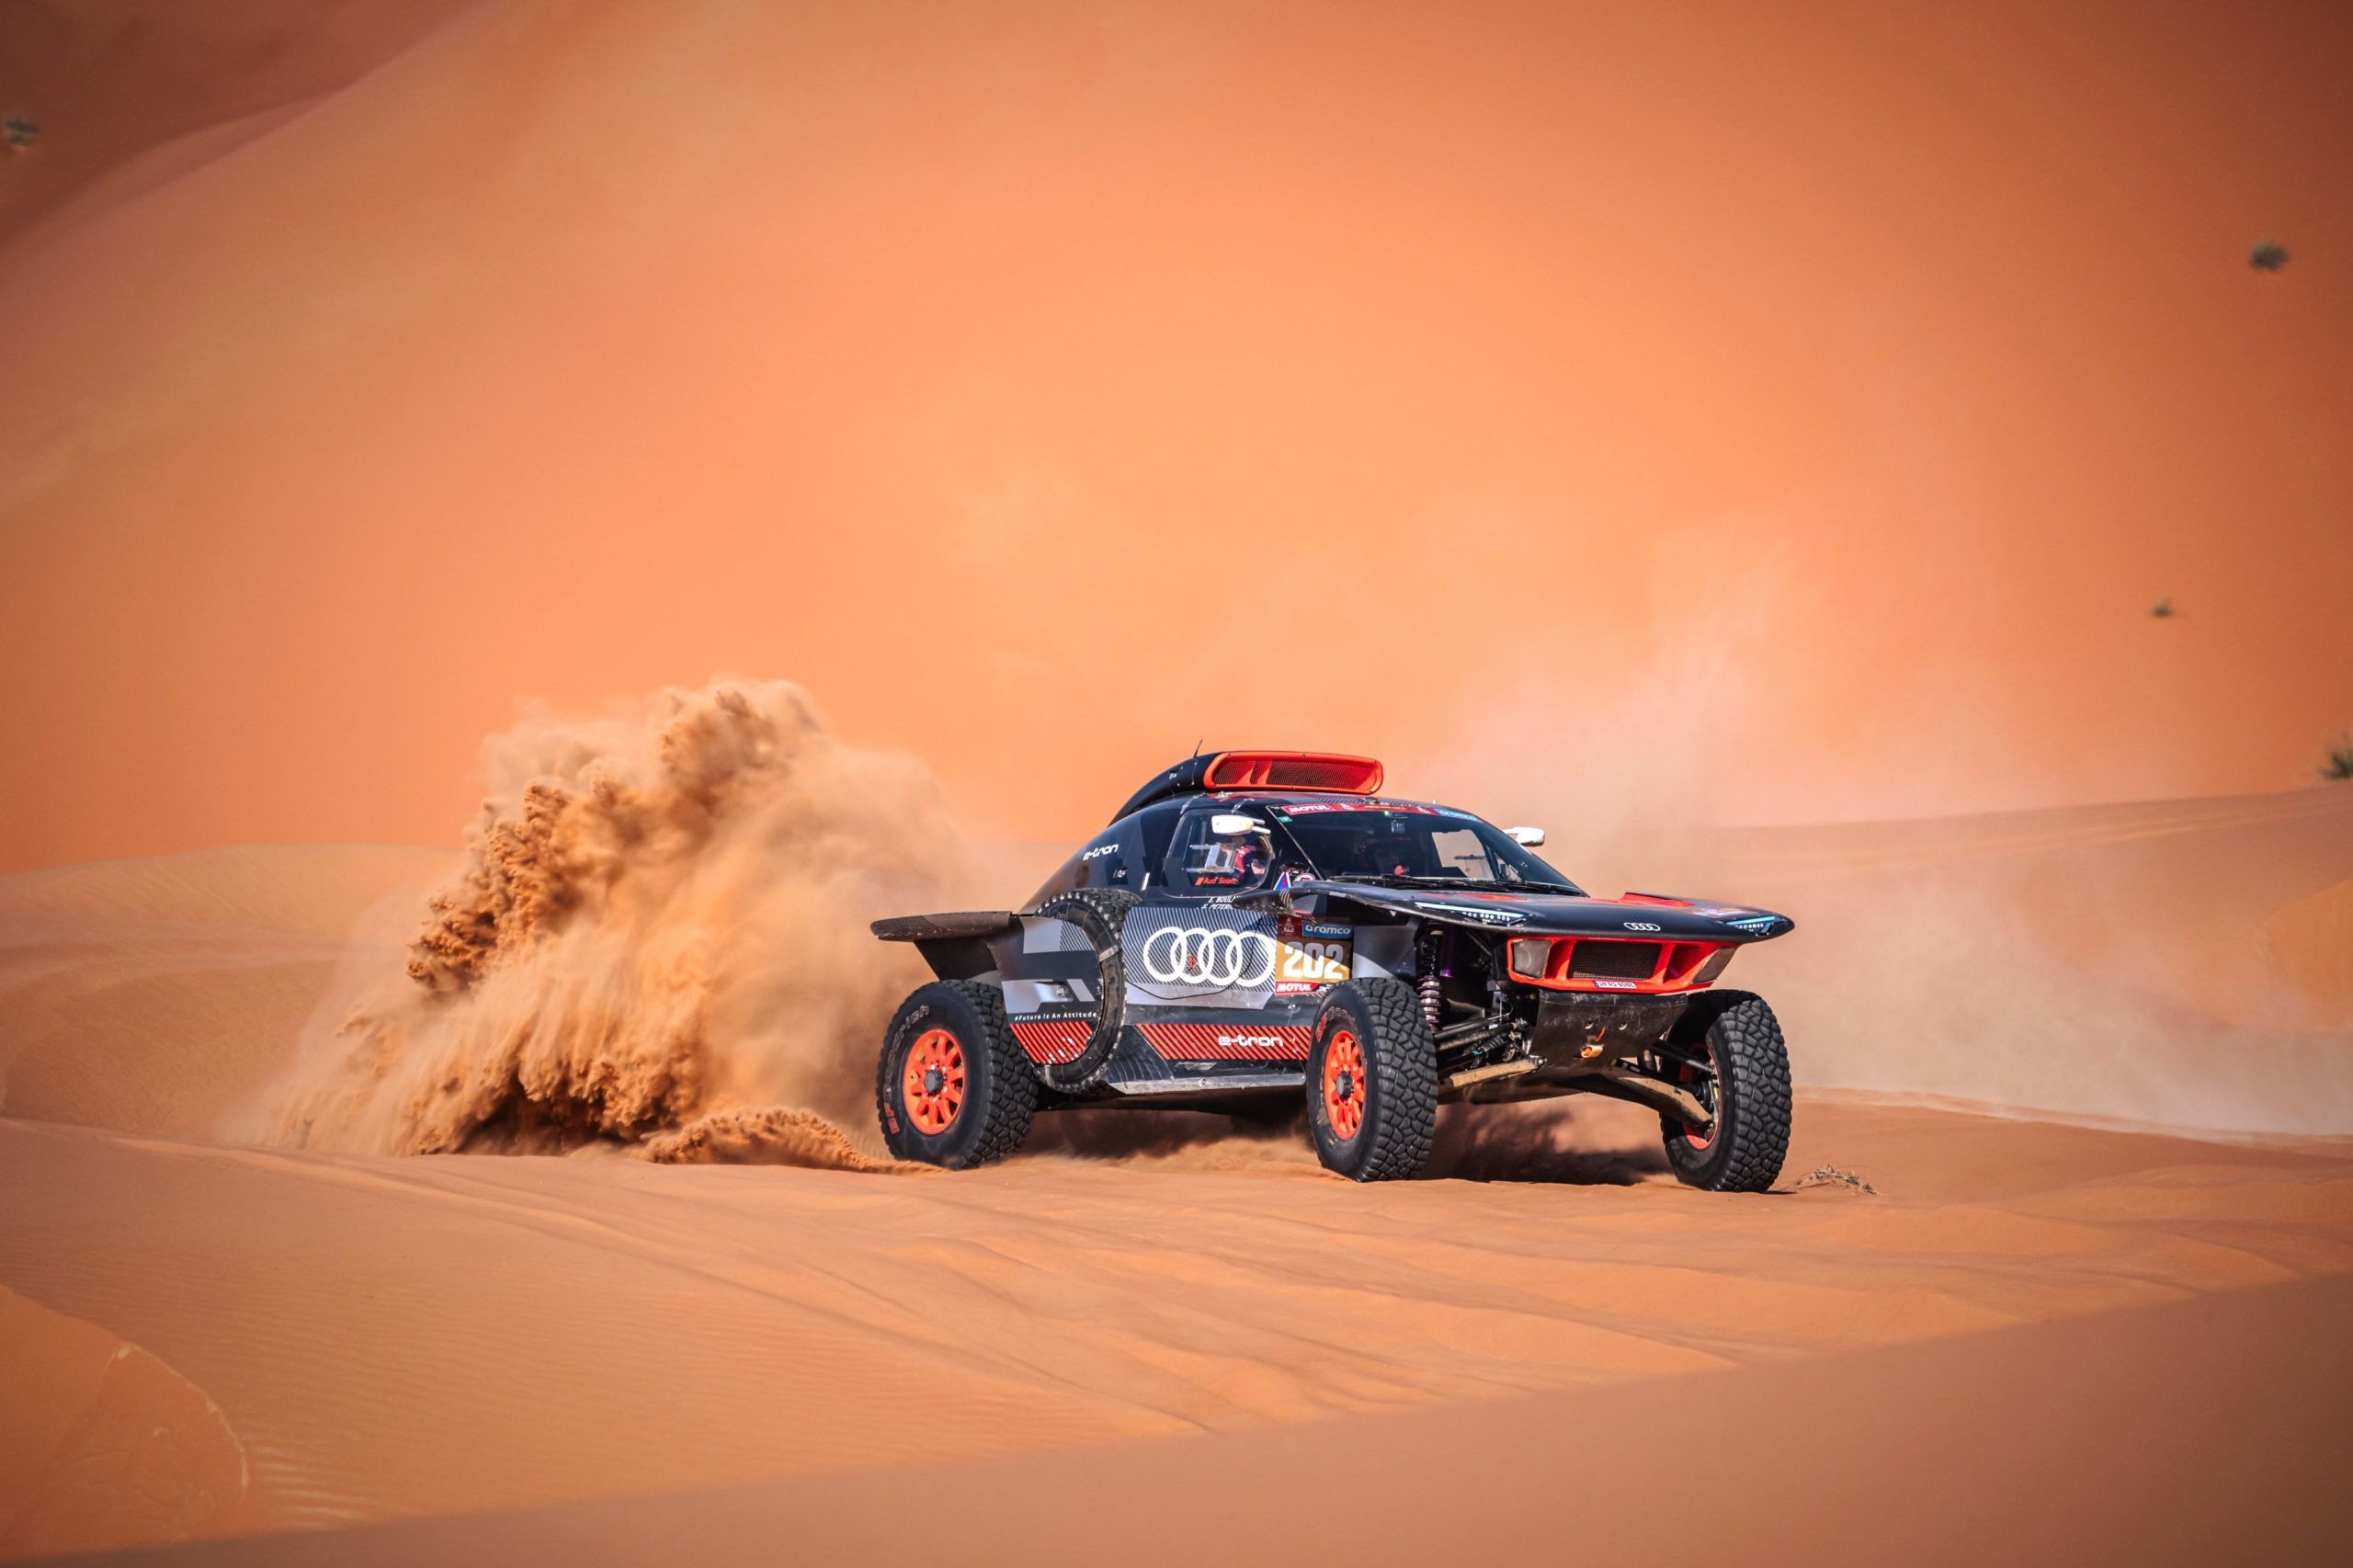 Copyright: Team Audi Dakar